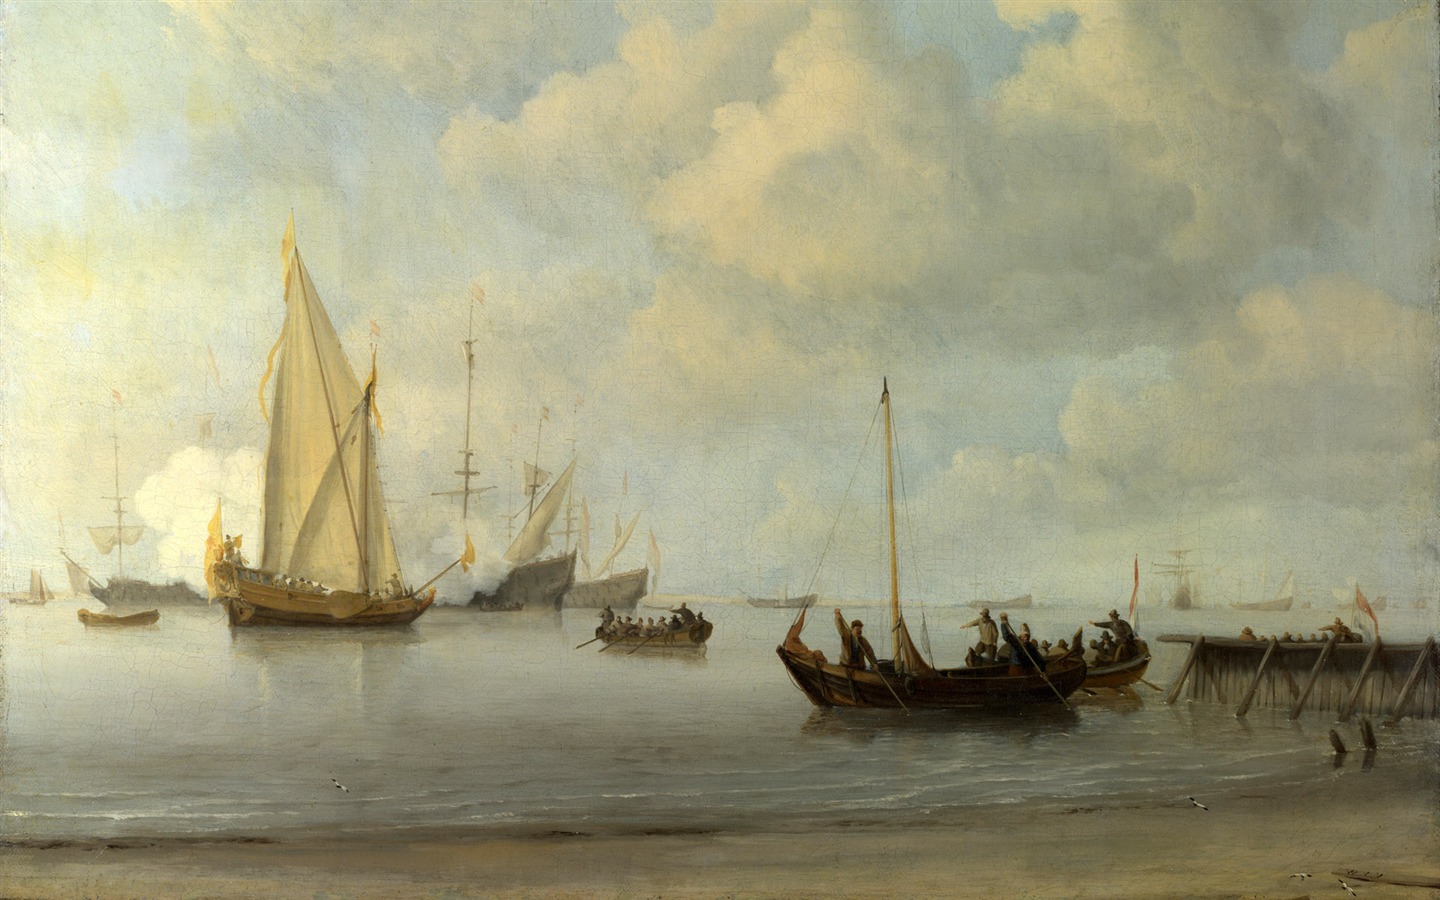 伦敦画廊帆船 壁纸(二)6 - 1440x900